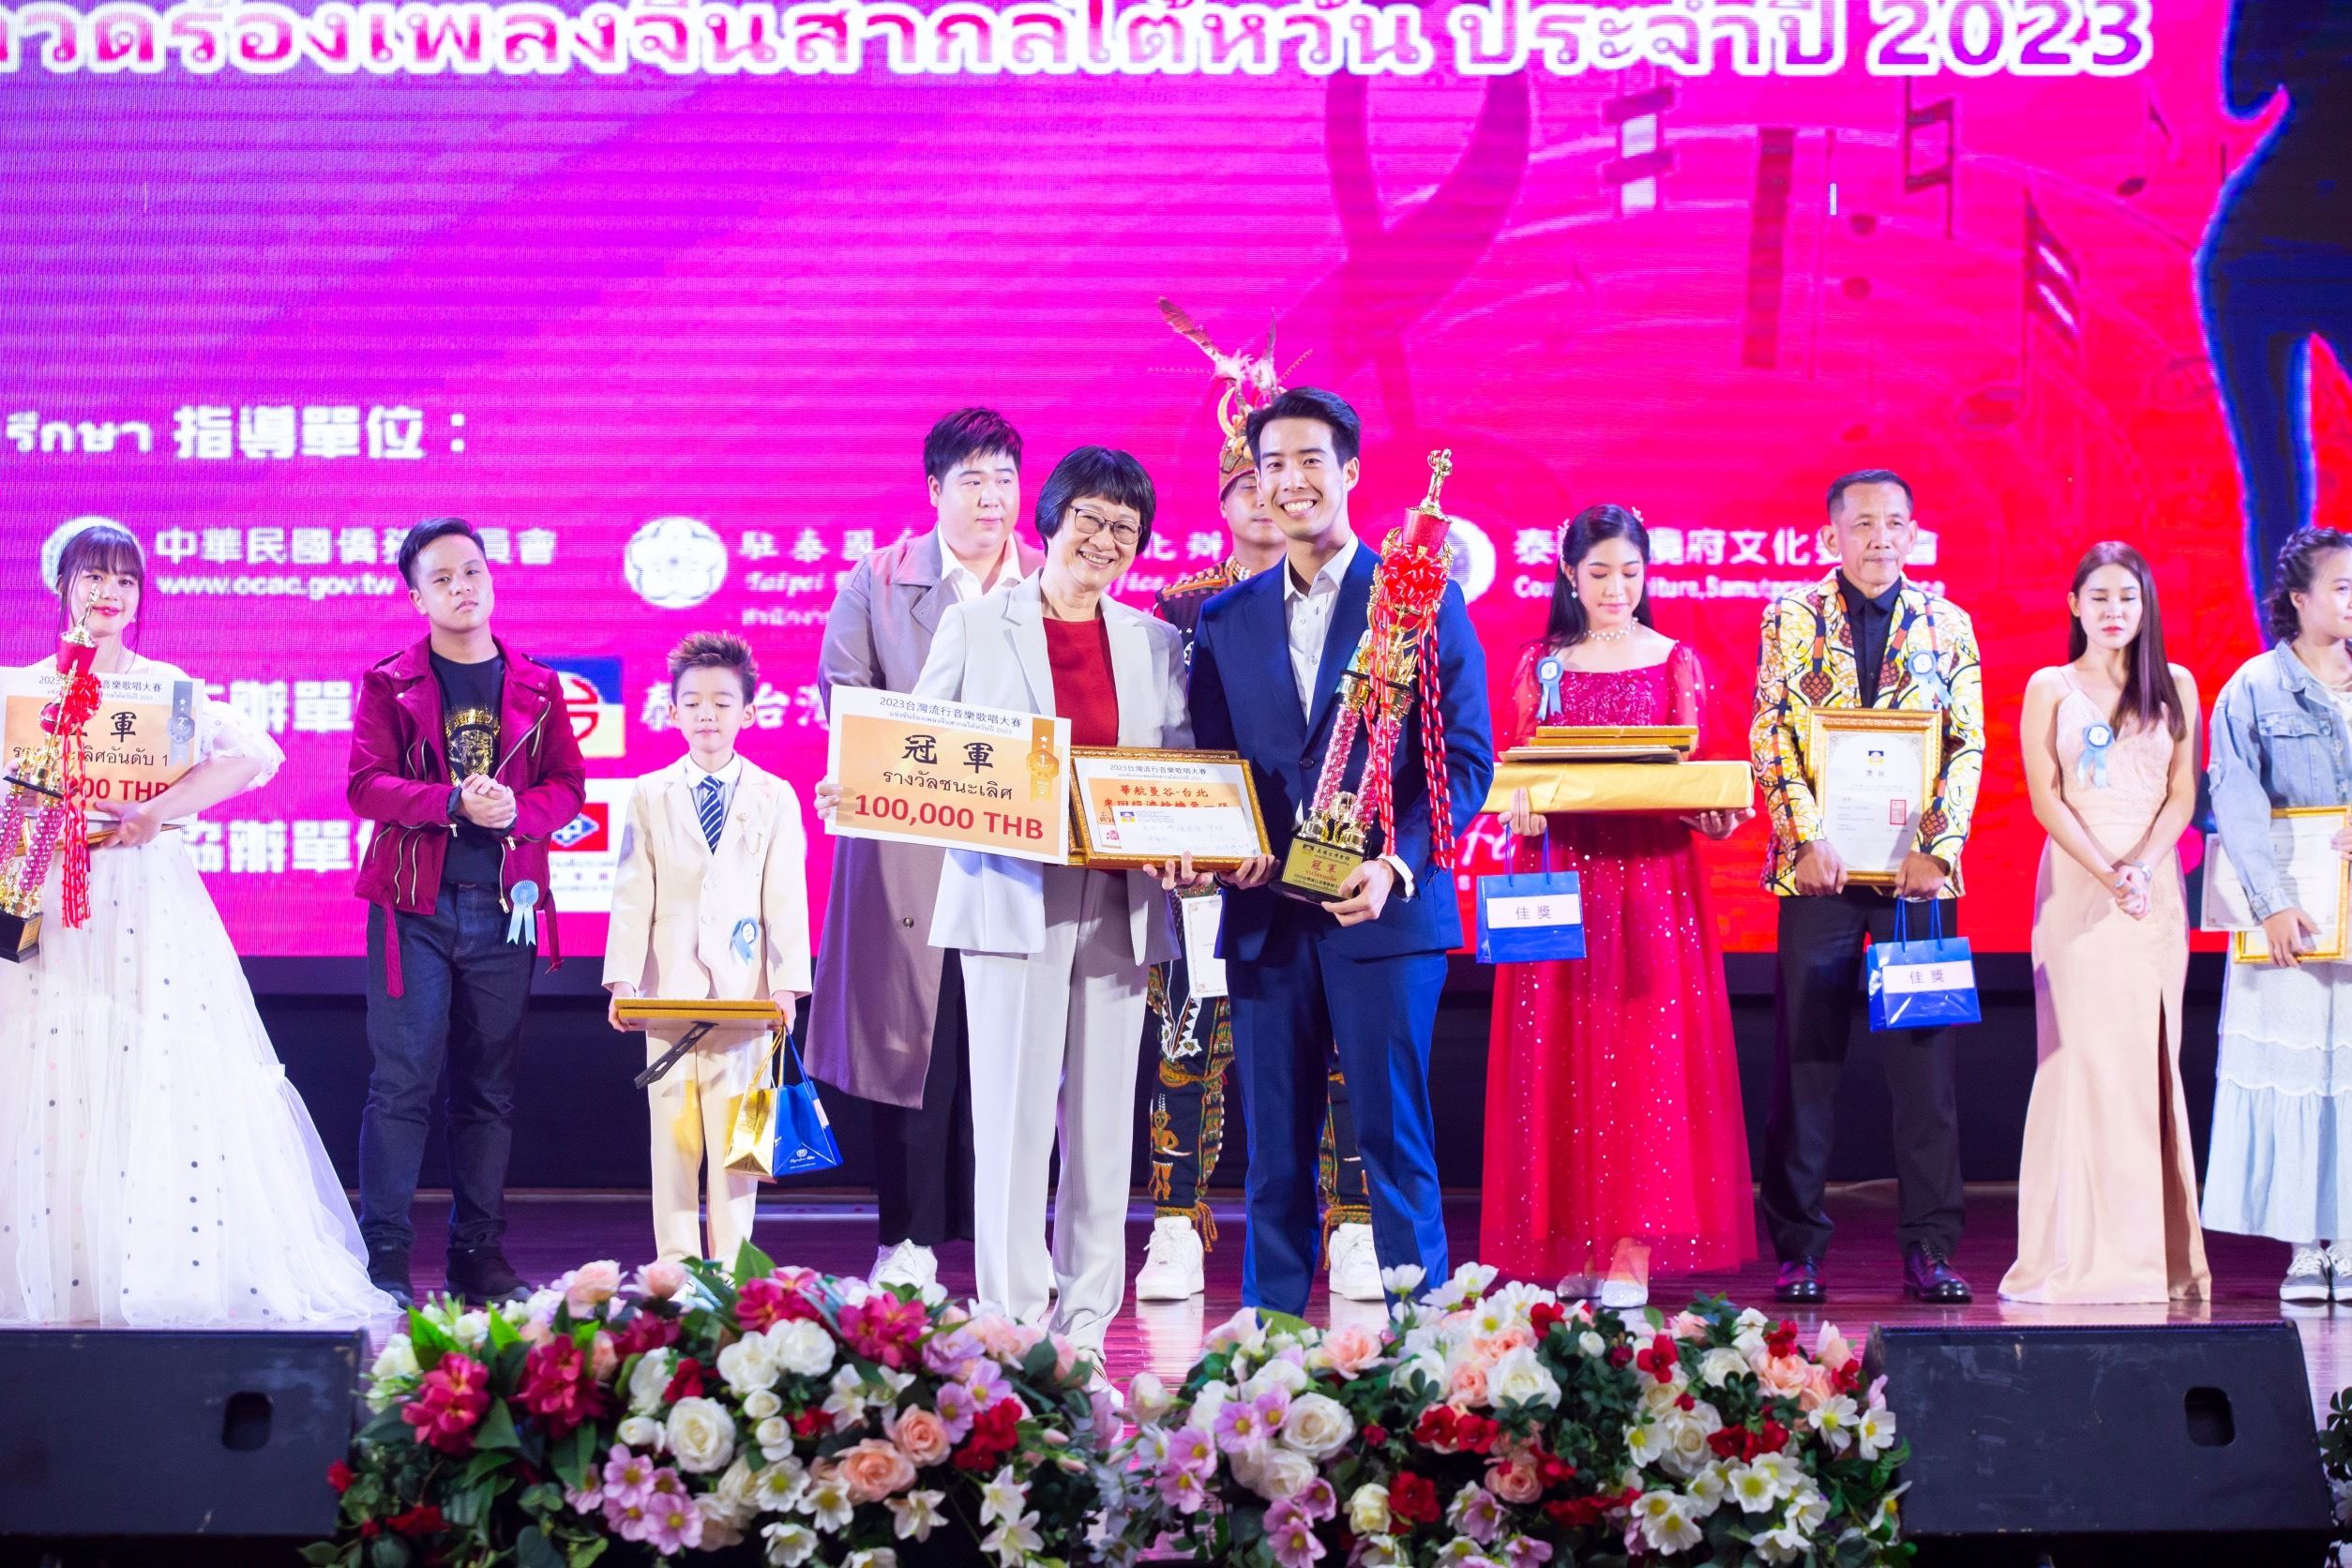 กระทรวงวัฒนธรรมจัด “การประกวดร้องเพลงจีนสากลไต้หวันปี 2023” ที่ประเทศไทย ภาพ/จากกระทรวงวัฒนธรรม